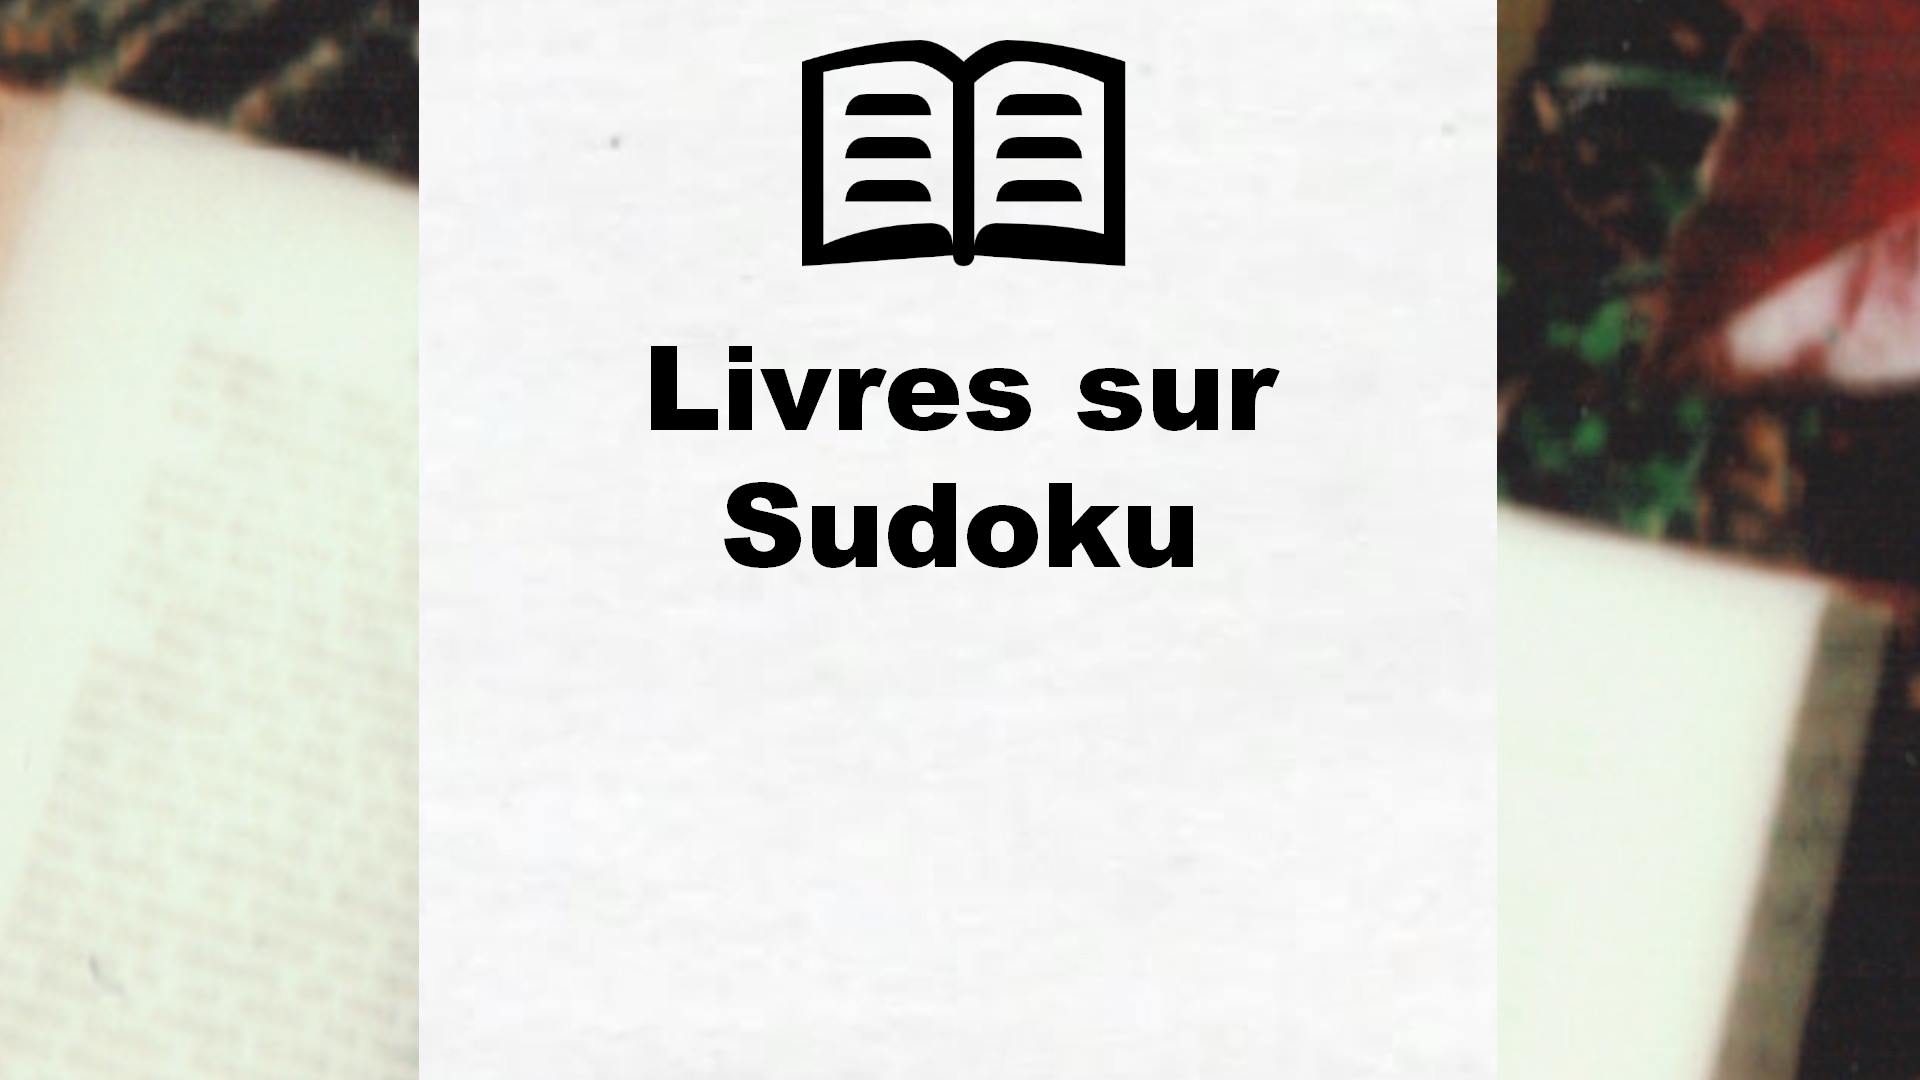 Livres sur Sudoku